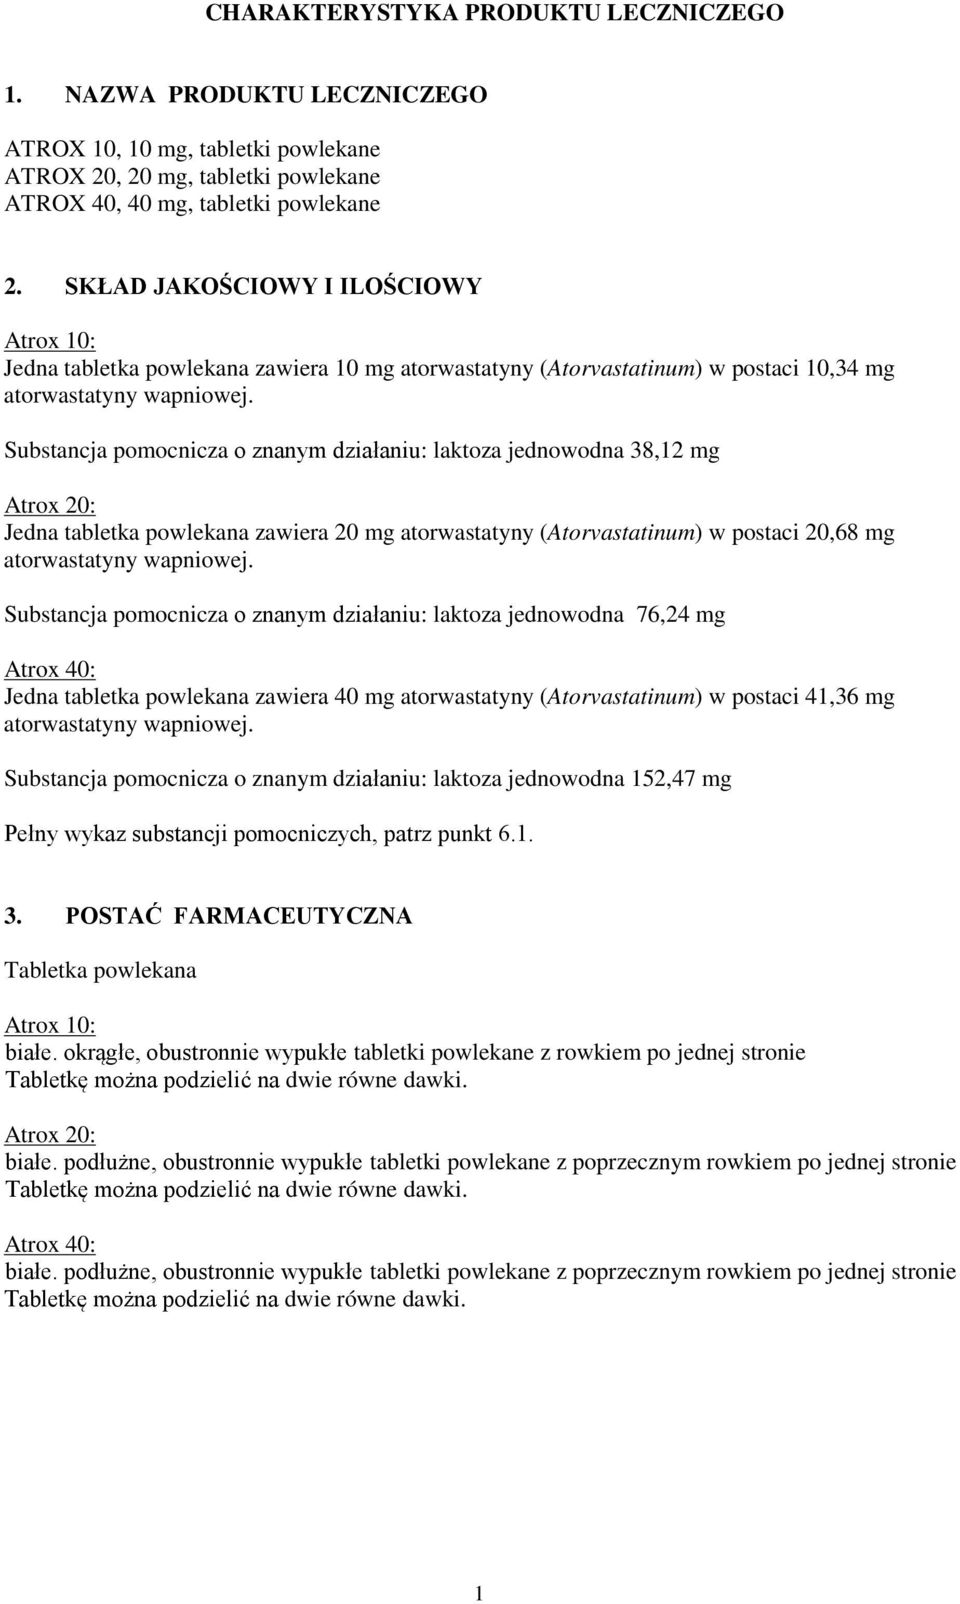 Substancja pomocnicza o znanym działaniu: laktoza jednowodna 38,12 mg Atrox 20: Jedna tabletka powlekana zawiera 20 mg atorwastatyny (Atorvastatinum) w postaci 20,68 mg atorwastatyny wapniowej.